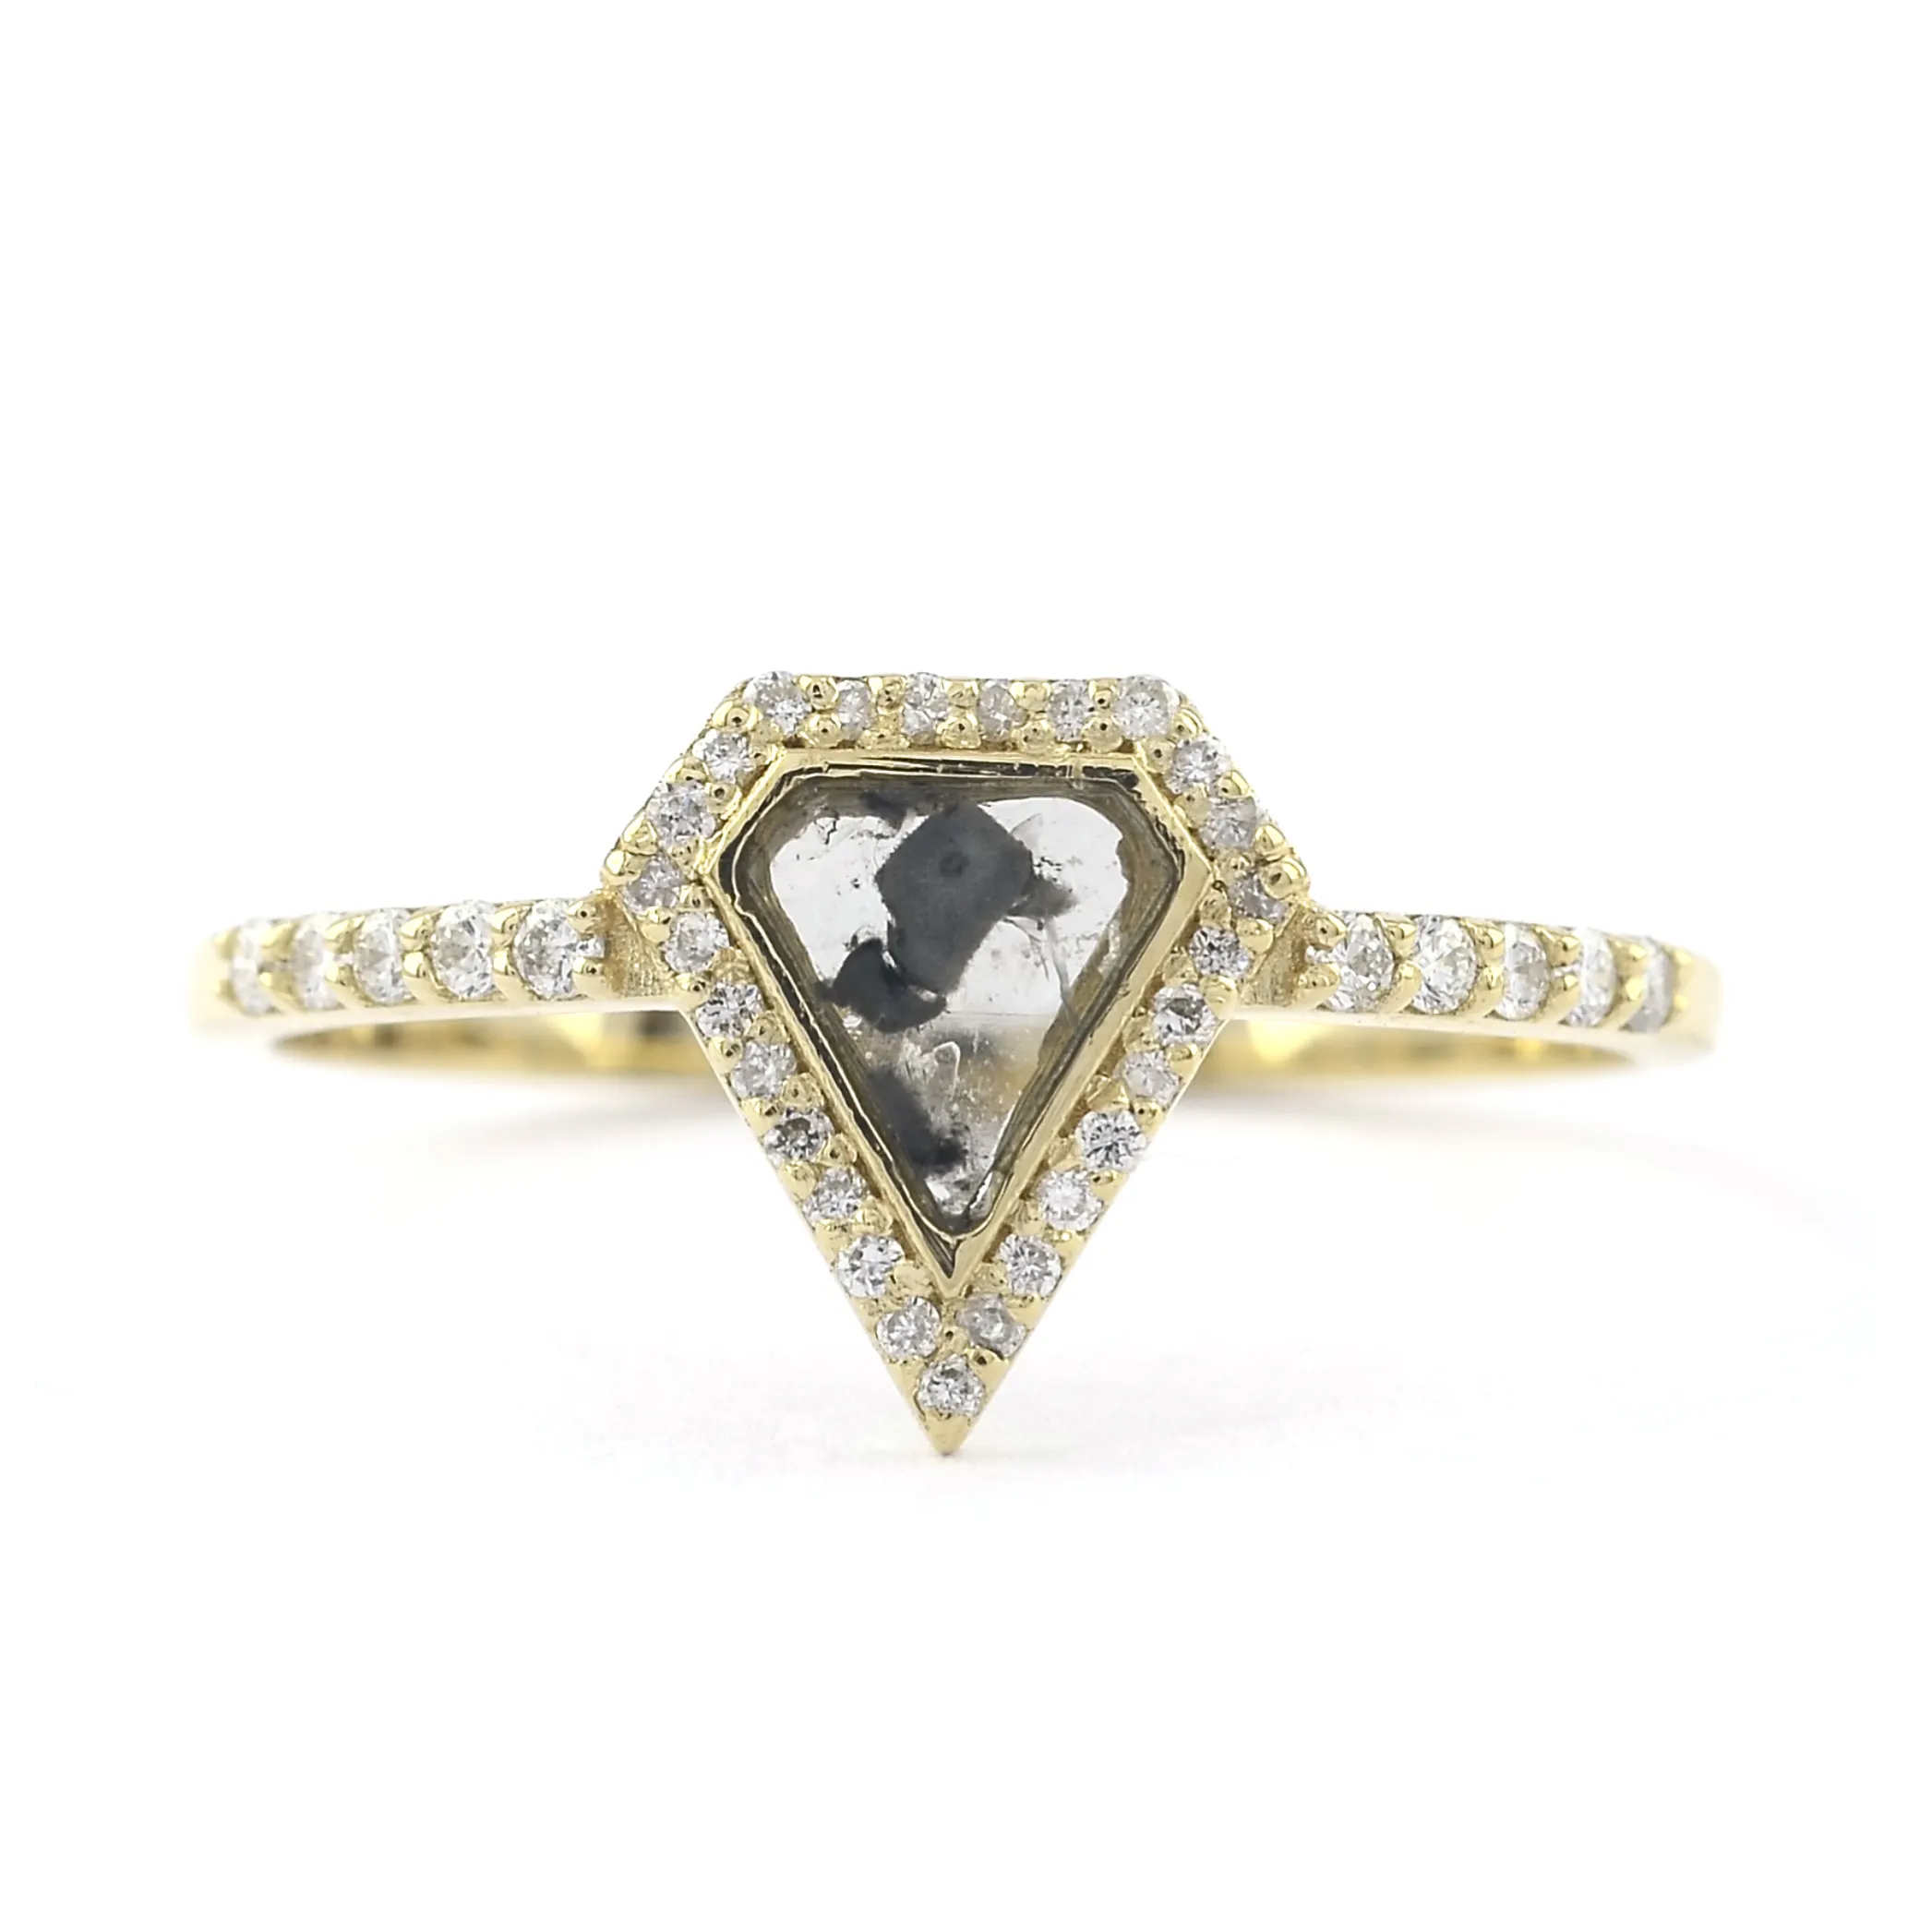 다이아몬드 보석 18k 솔리드 골드 정품 다이아몬드 반지 소금과 후추 조각 다이아몬드 약혼 결혼 반지 공예품 금 보석